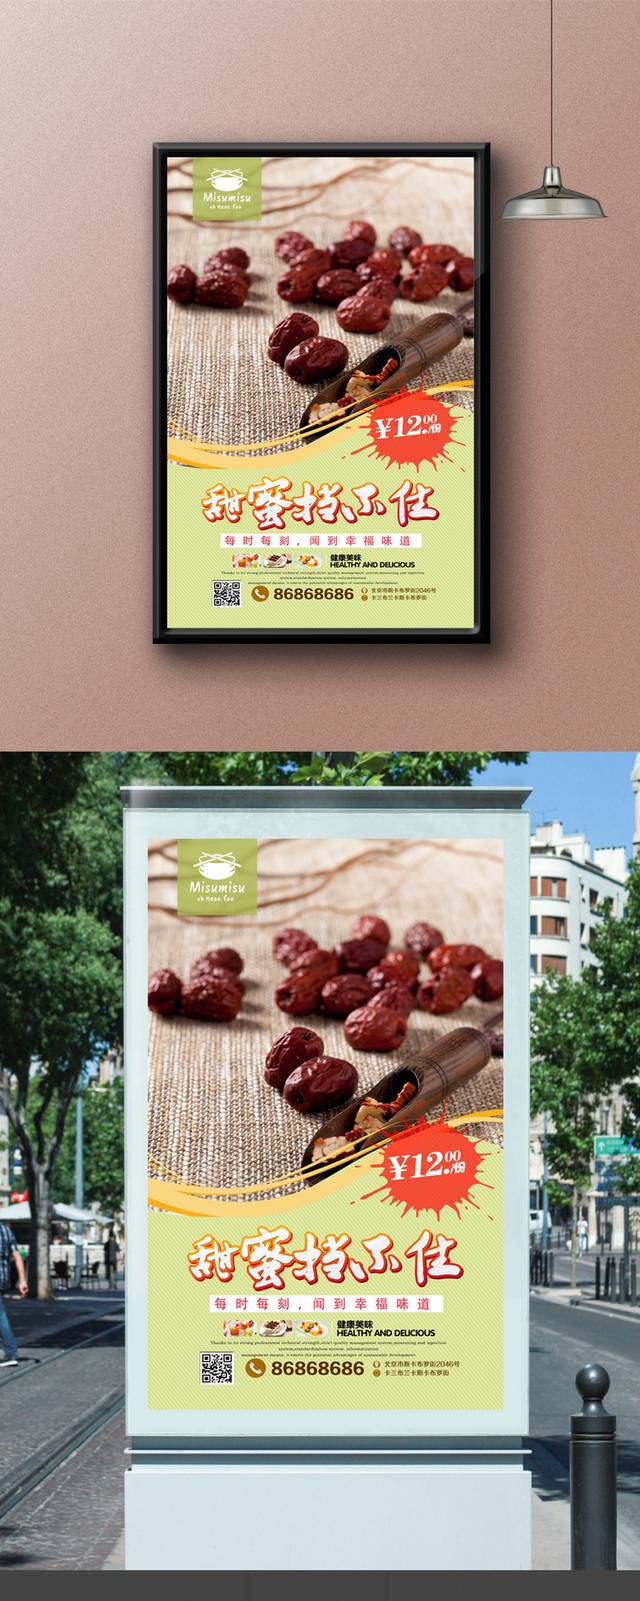 美味红枣促销海报设计